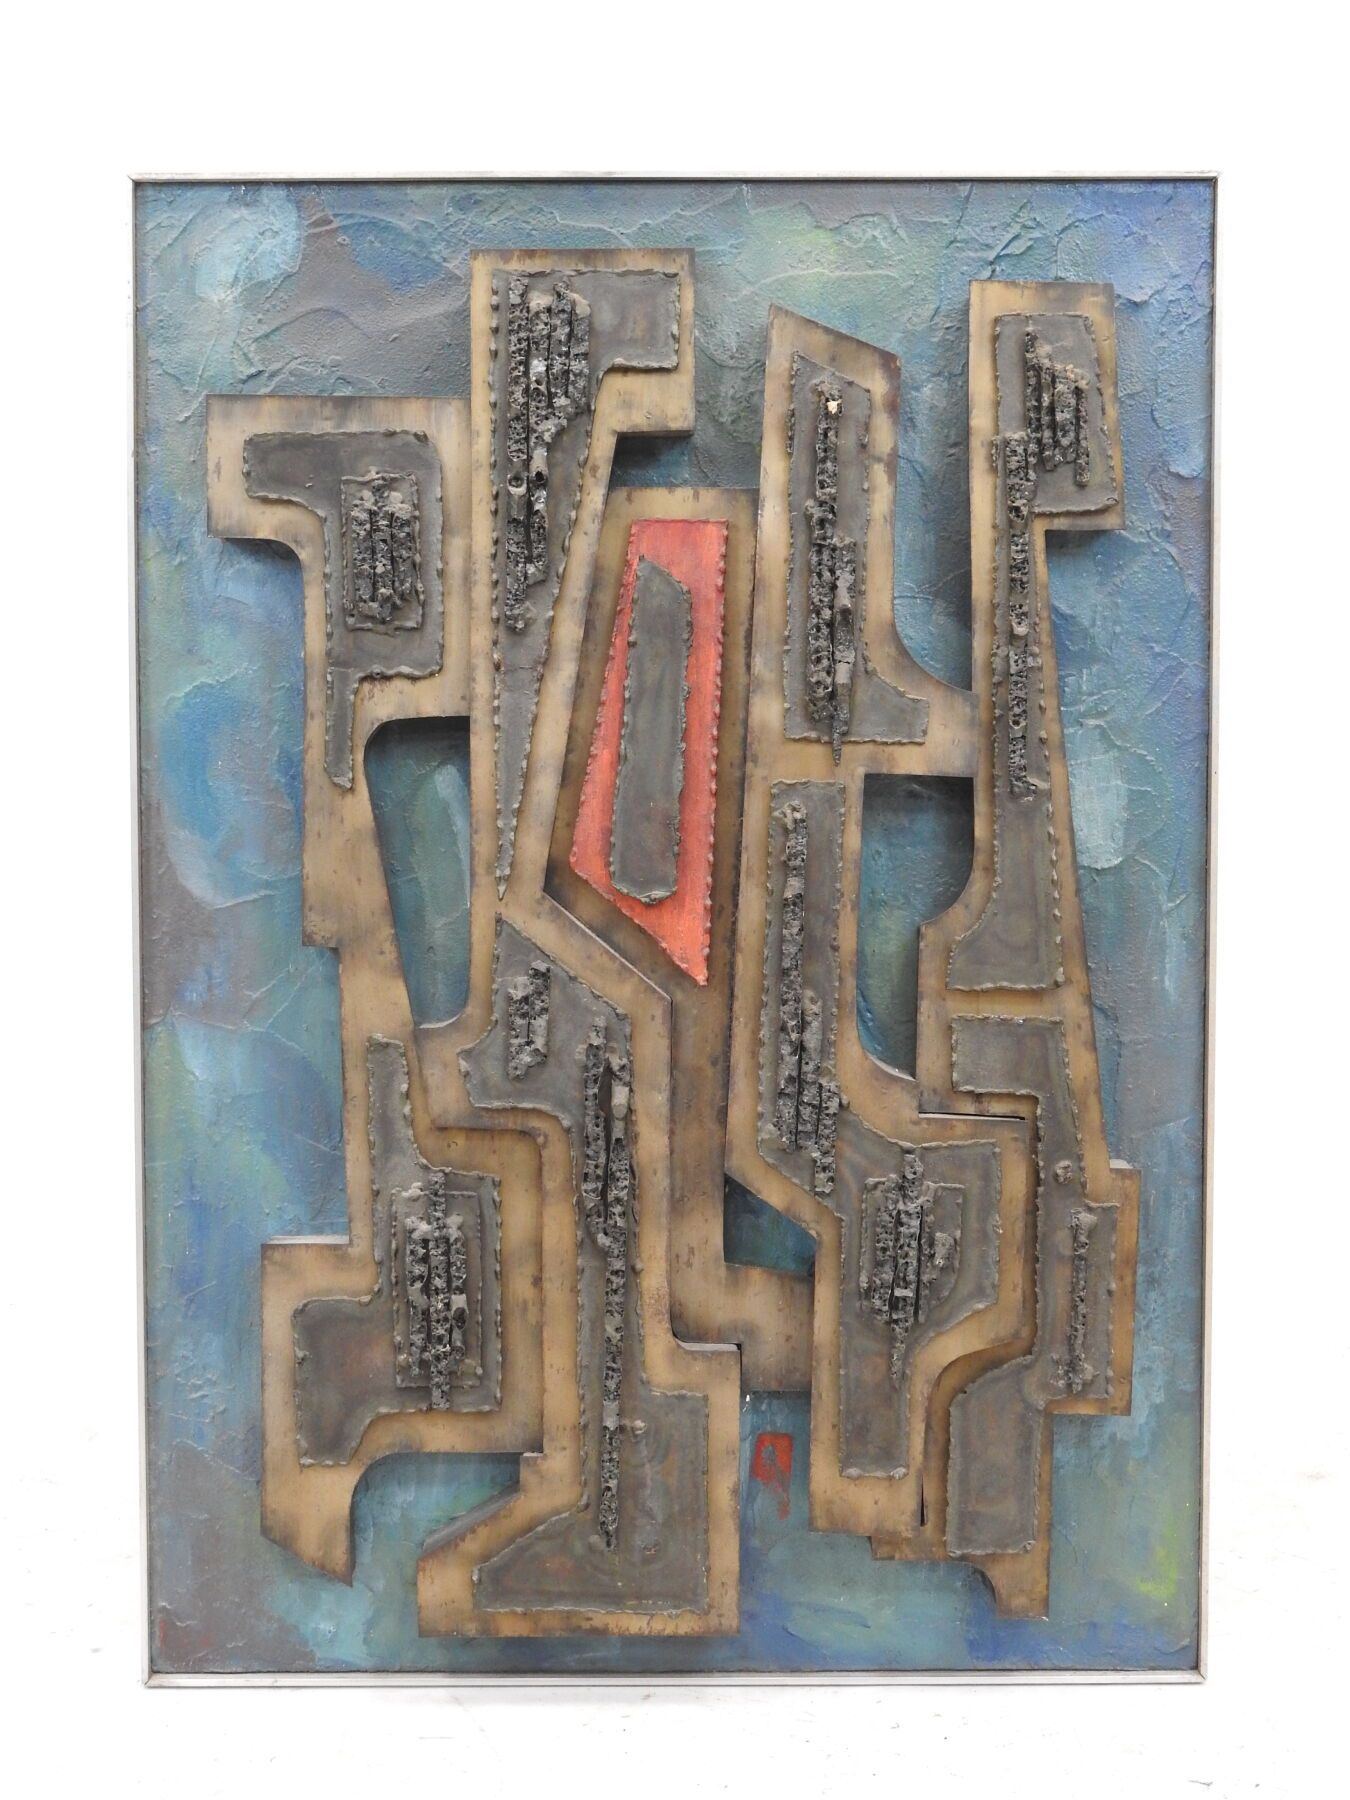 Null 凯勒（20岁）。春天。混合技术。抛光铁质浮雕，抽象图案固定在绿松石背景的彩绘木上。背面有签名、标题和日期73。80 x 64 cm。